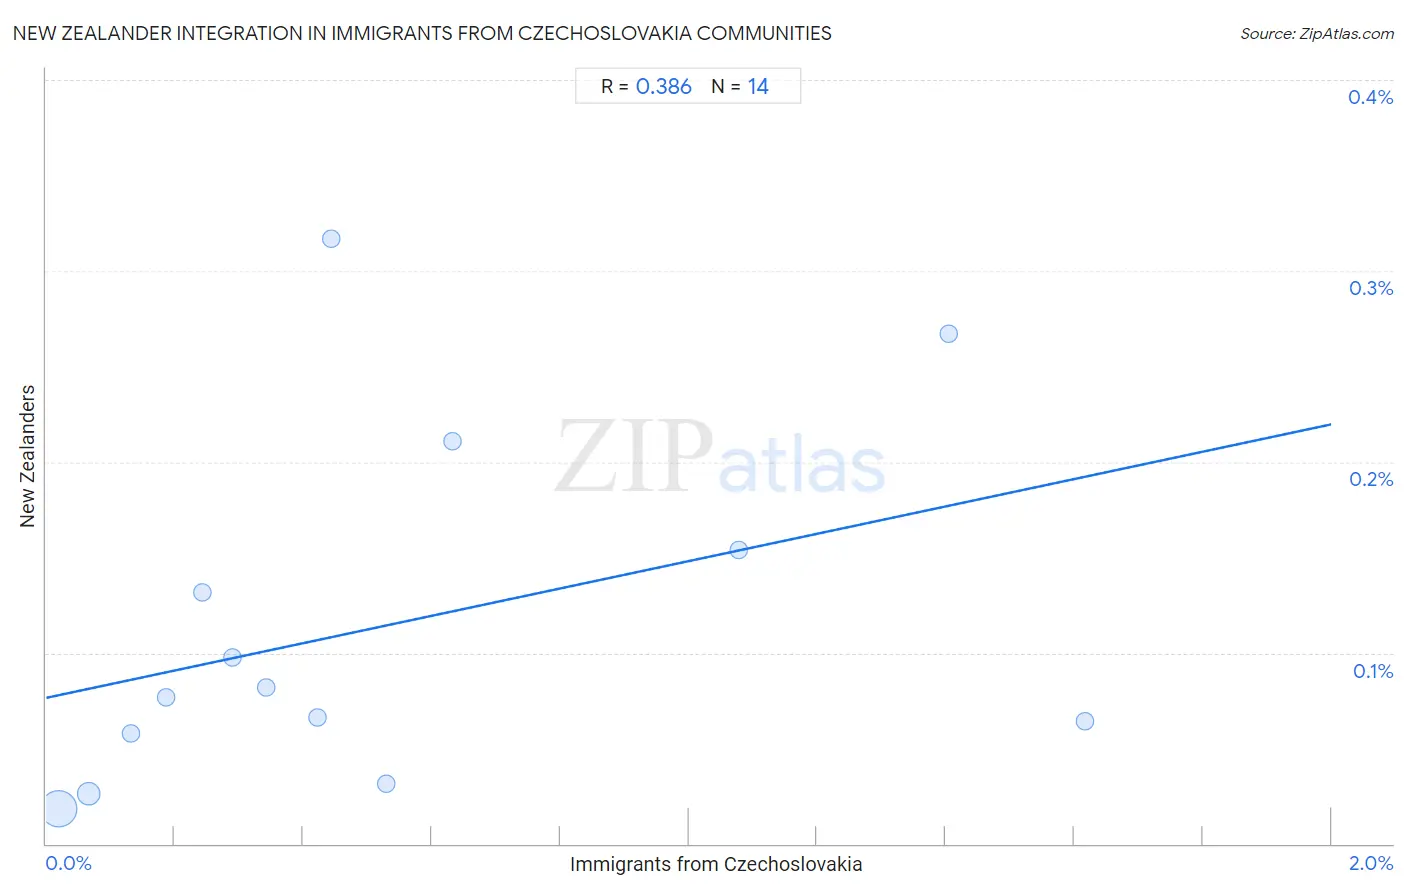 Immigrants from Czechoslovakia Integration in New Zealander Communities